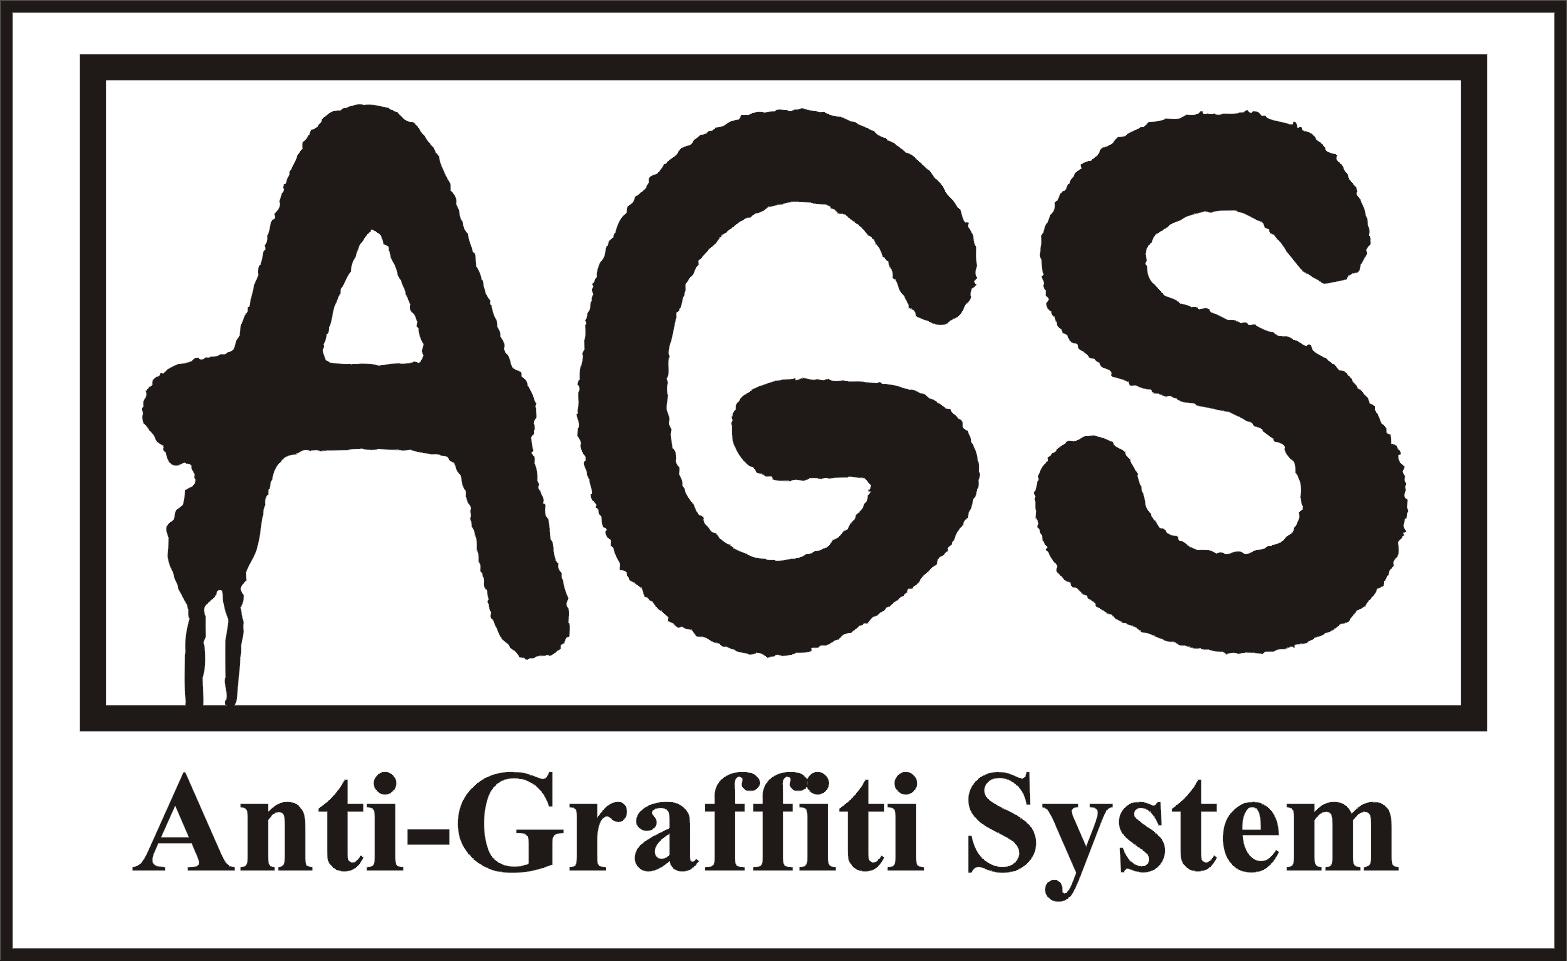 Sprzedaż preparatów AGS do usuwania graffiti oraz anty graffiti, Opole, Katowice, Kraków,Wrocław, opolskie